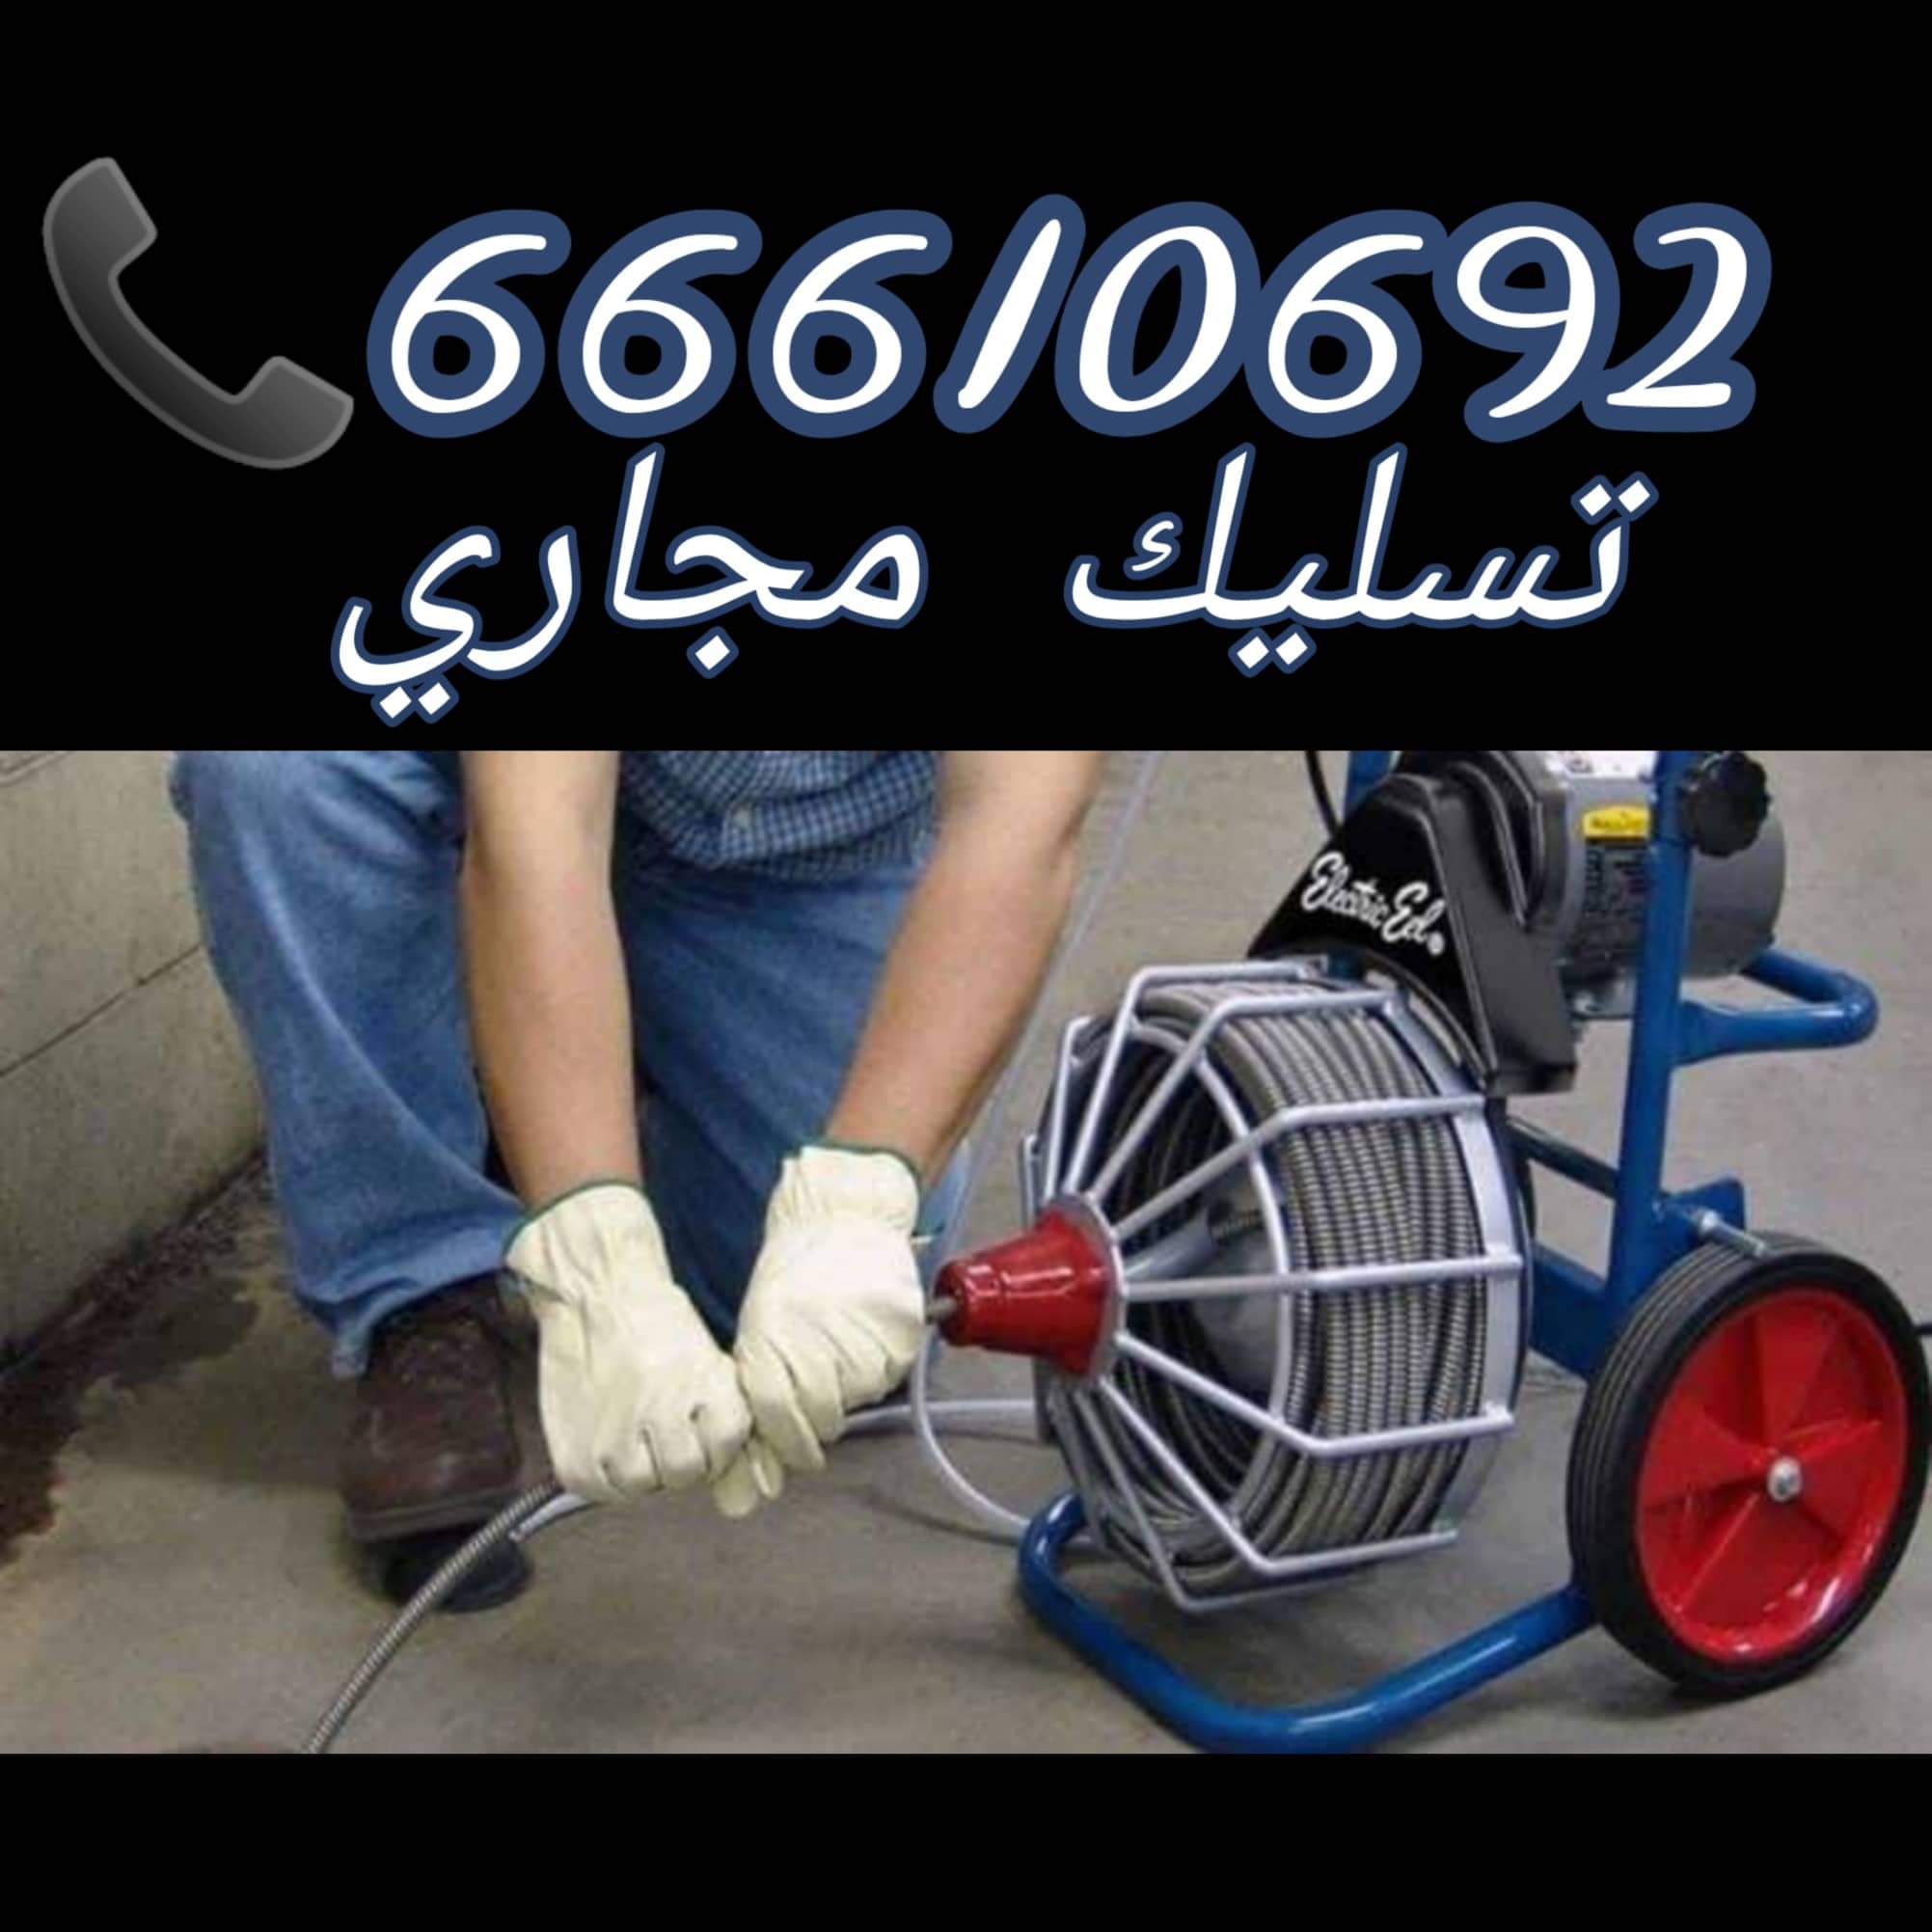 تسليك مجاري الفيحاء / 66610692 / صيانة وتركيب ادوات صحية الكويت